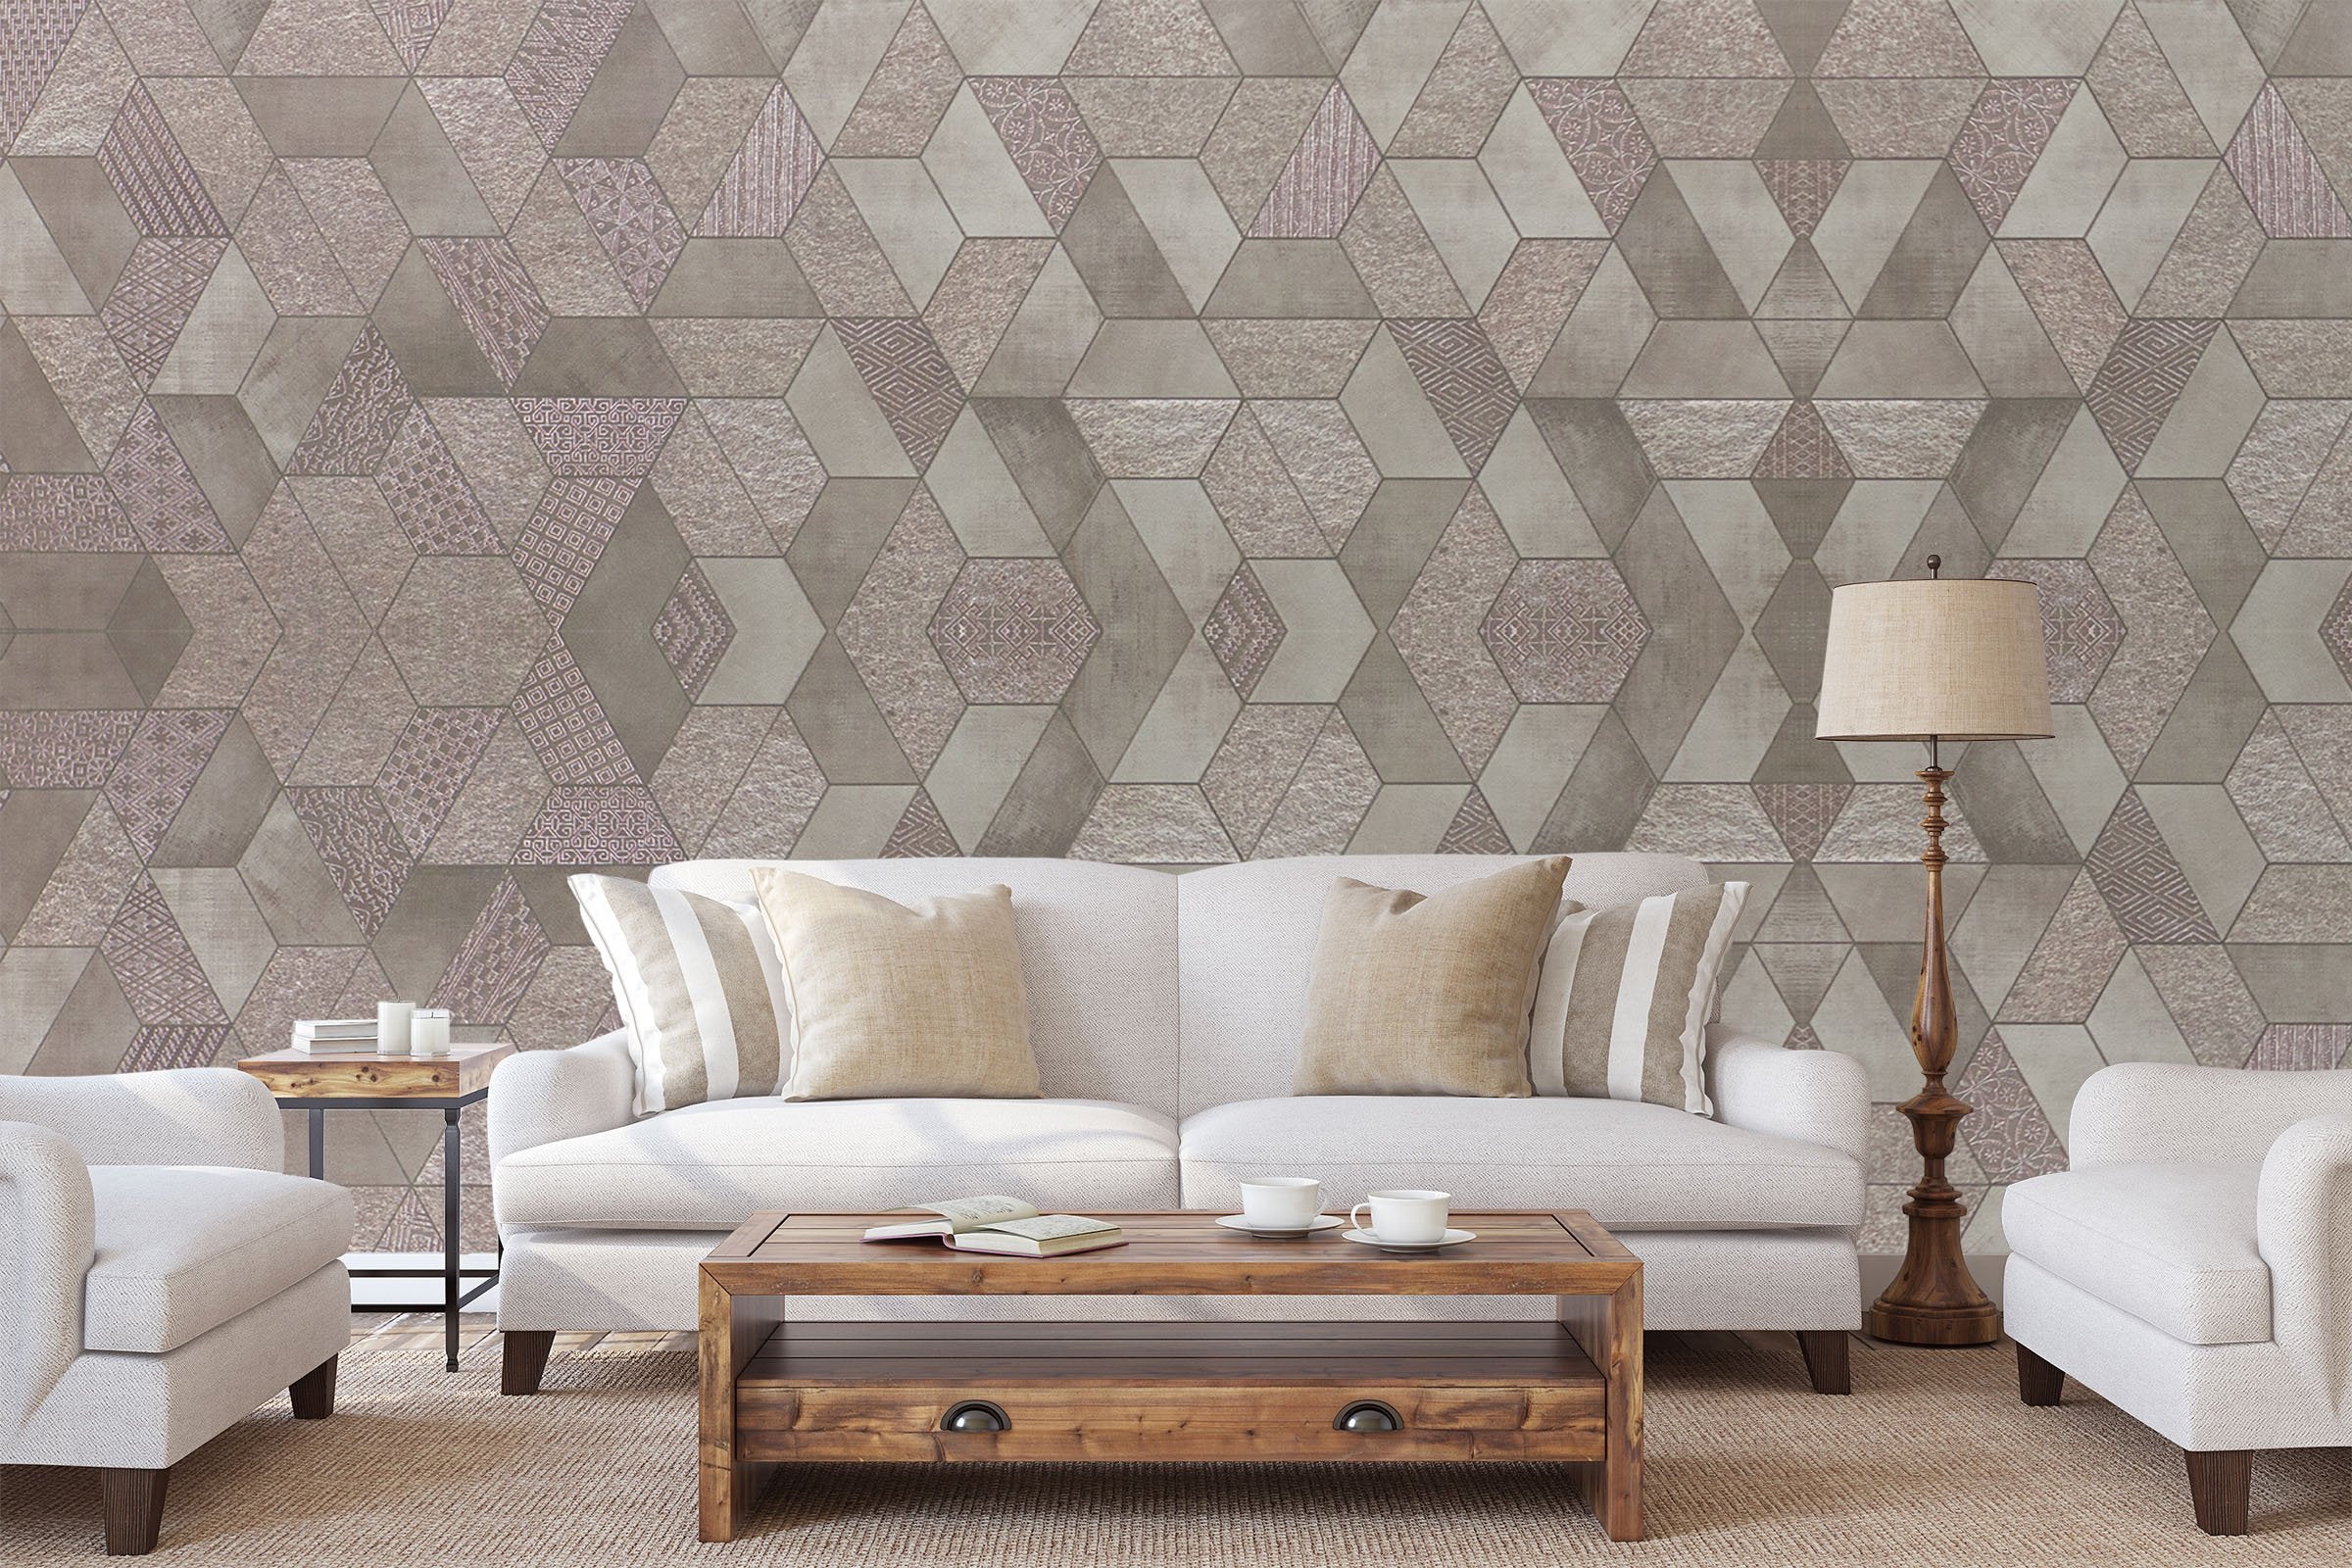 3D Fashion Polygon 0107 Marble Tile Texture Wallpaper AJ Wallpaper 2 